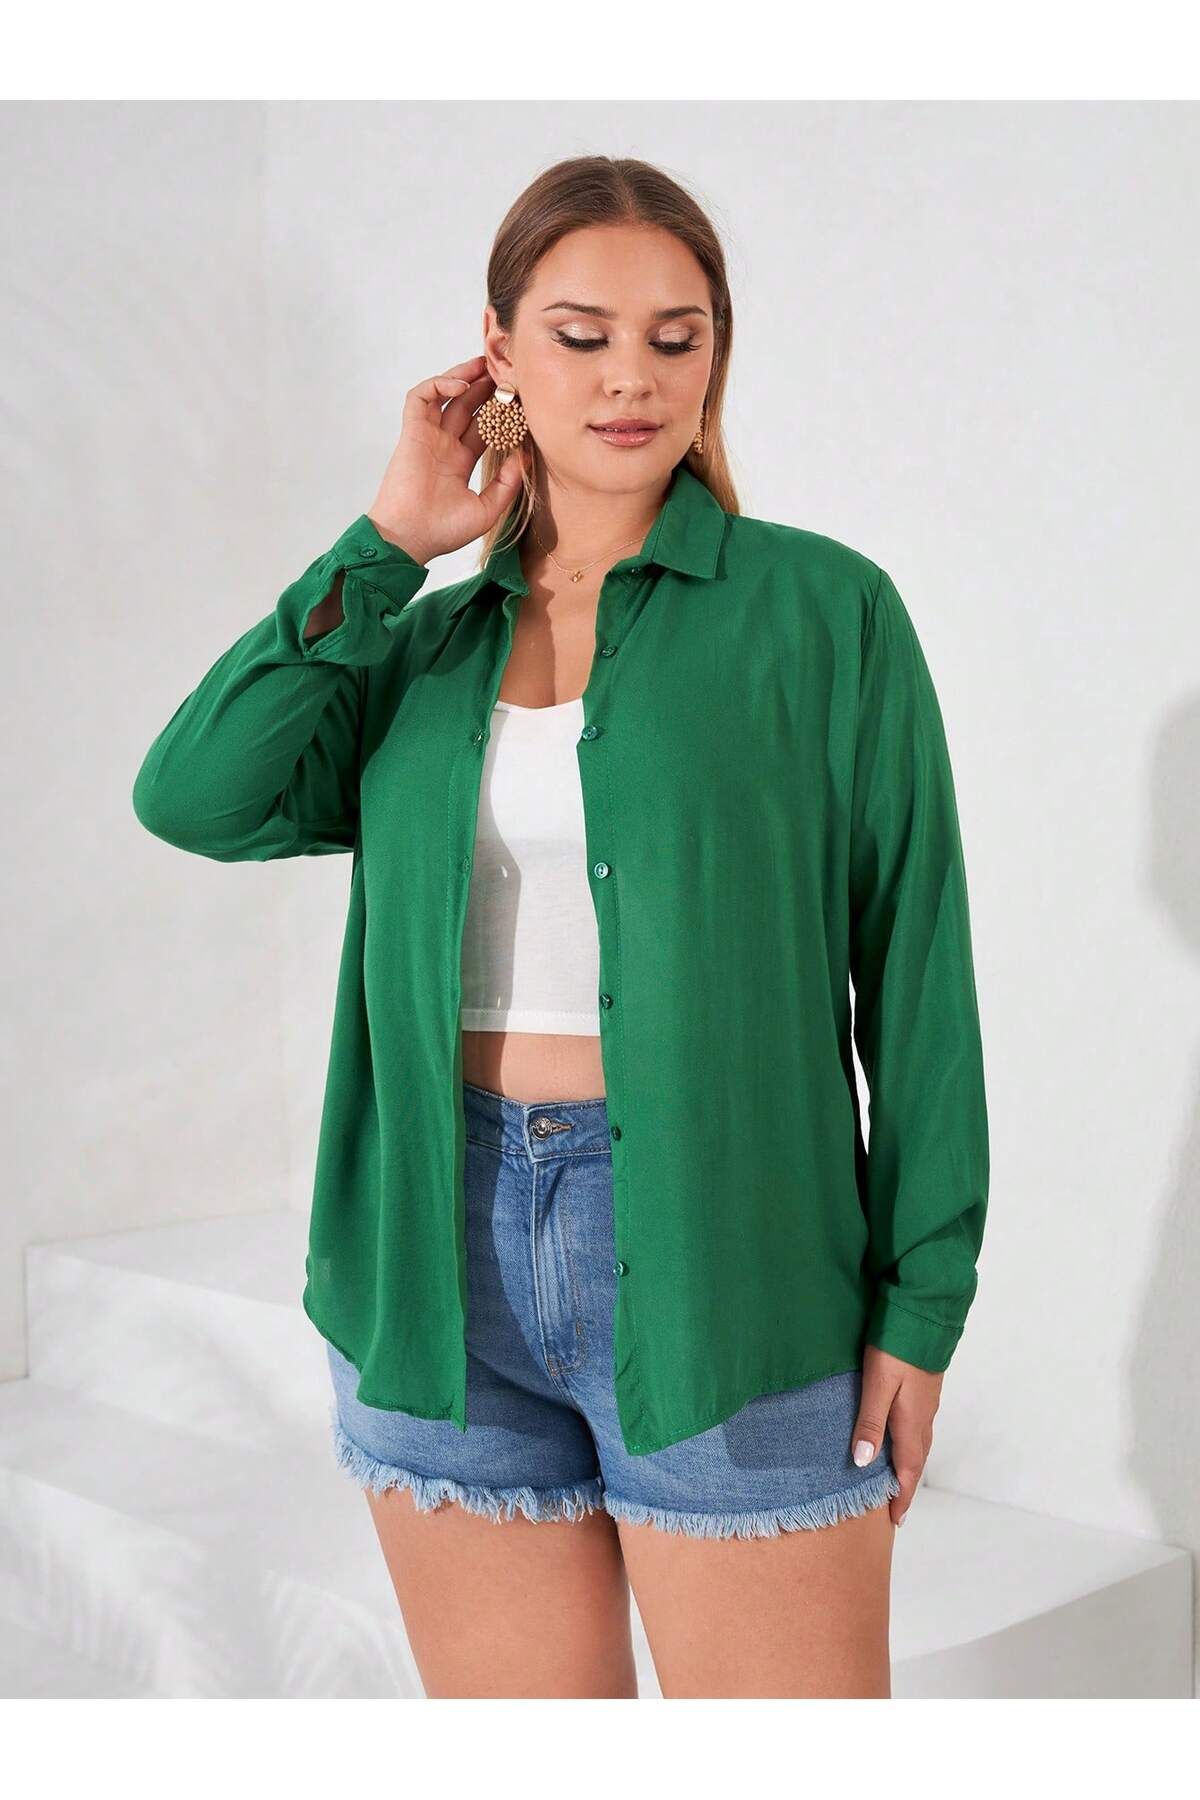 POLO BONETTA Kadın Yeşil Büyük Beden Basic Geniş Kalıp Dokuma Viskon Kumaş Gömlek Bluz